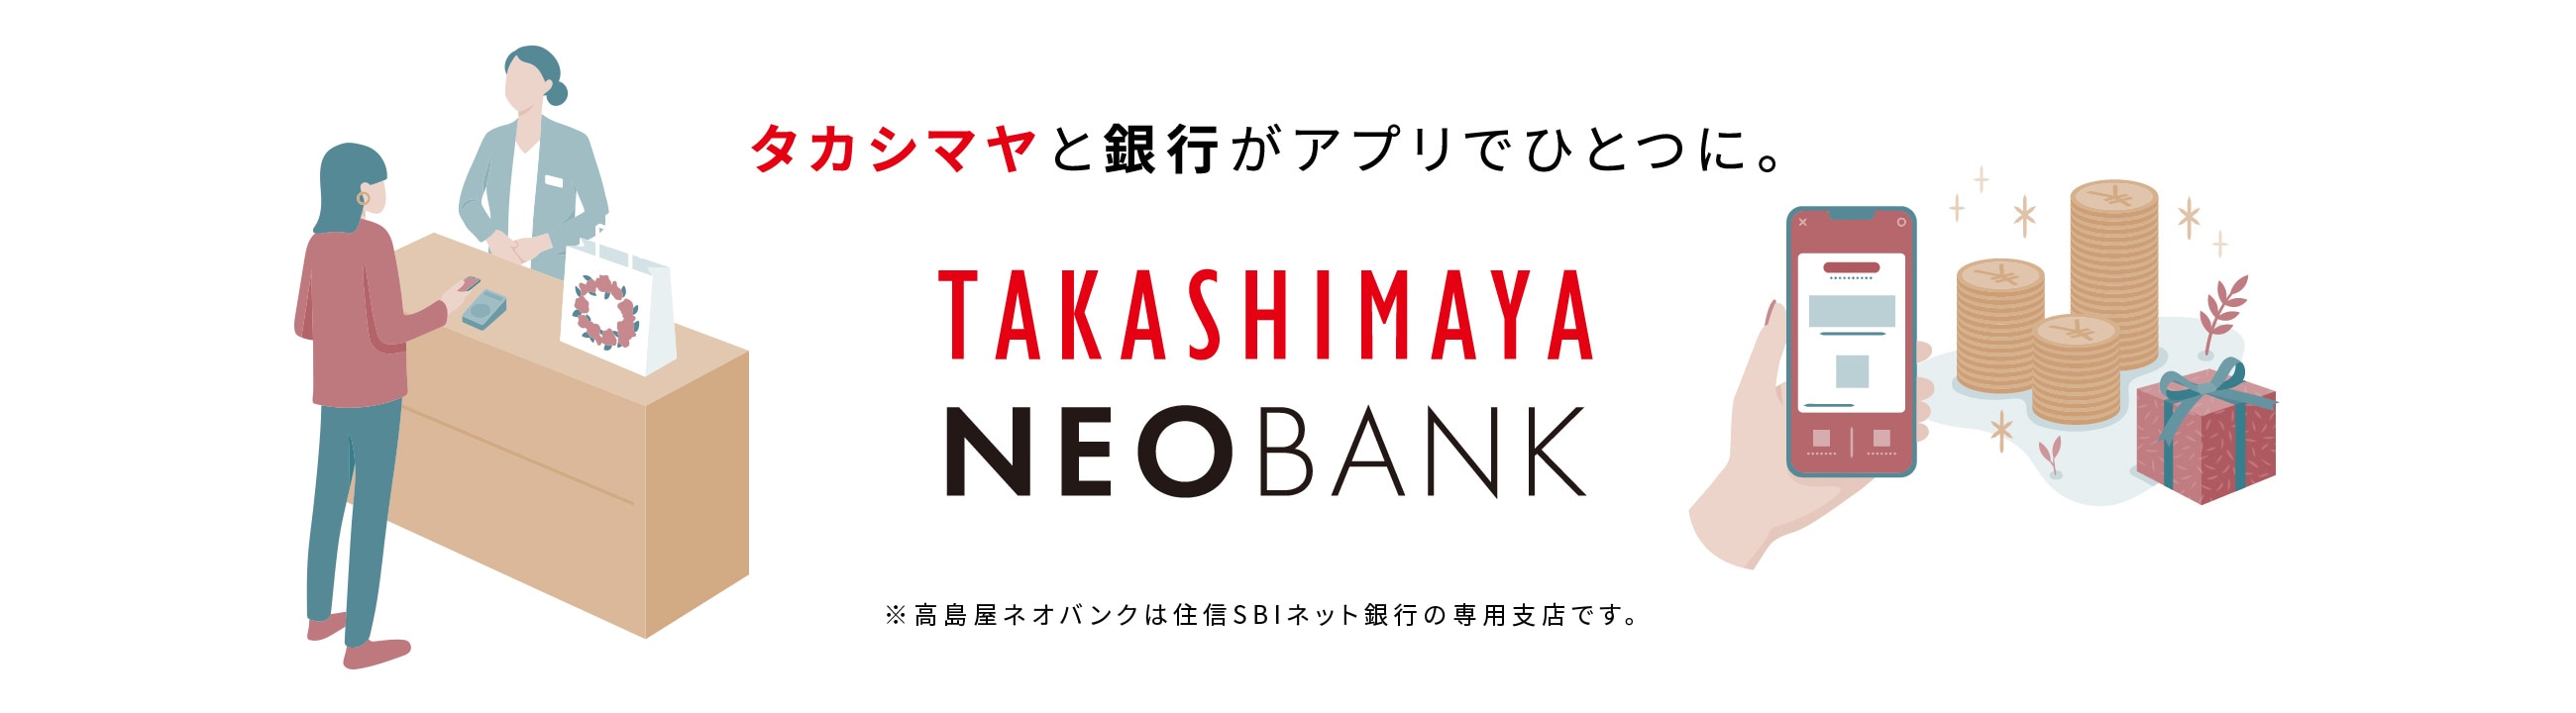 タカシマヤと銀行がアプリでひとつに。 TAKASHIMAYA NEOBANK ※高島屋ネオバンクは住信SBIネット銀行の専用支店です。